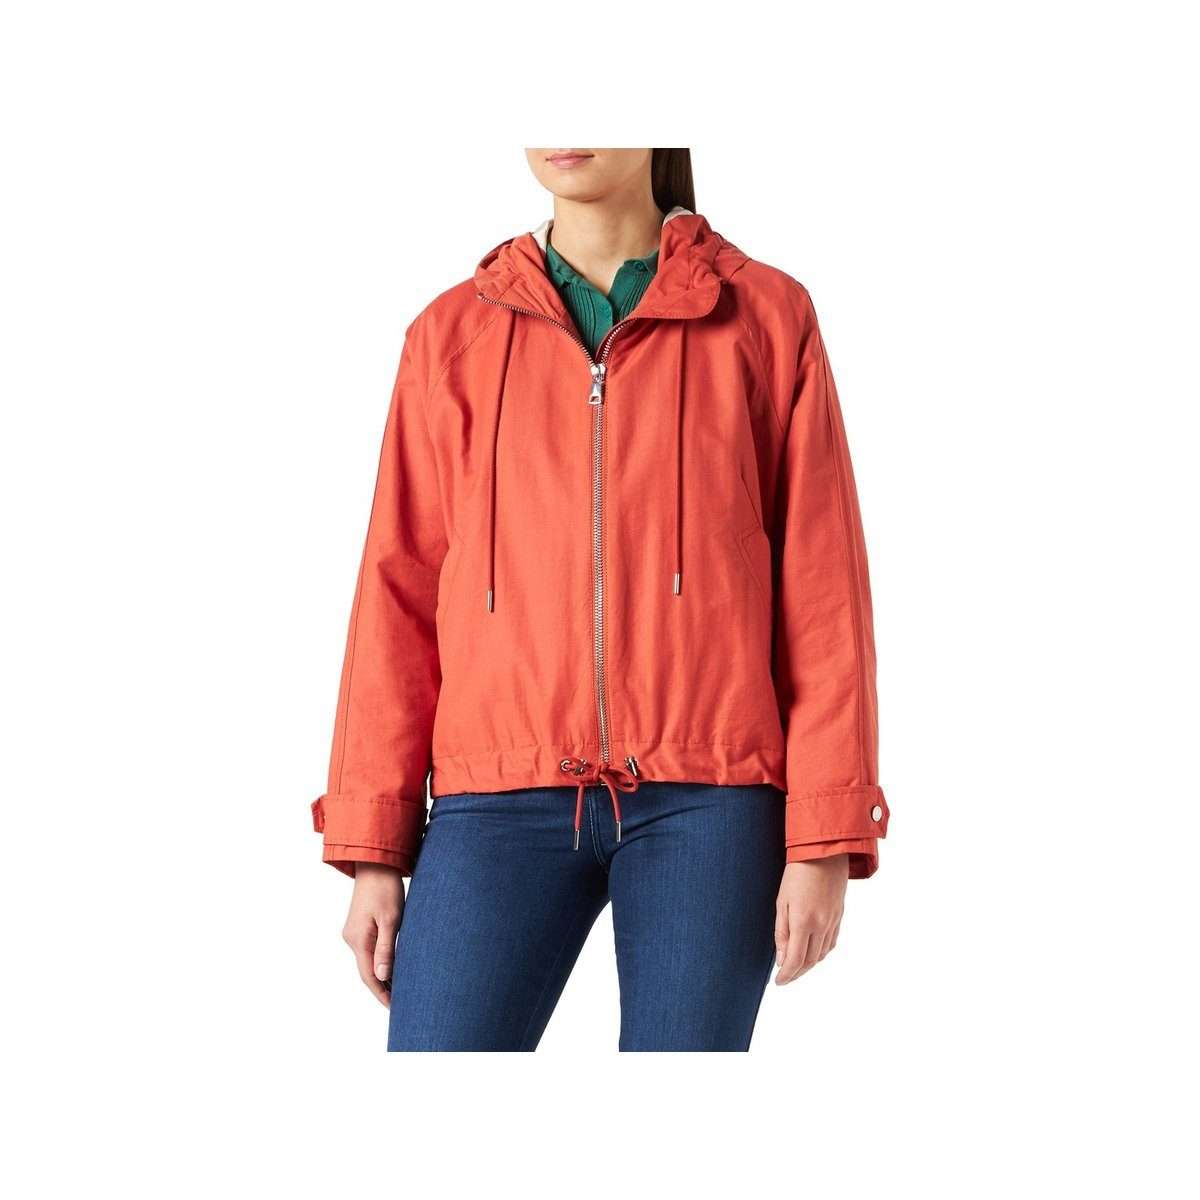 Функциональная куртка 3-в-1 оранжевая (1 шт.)